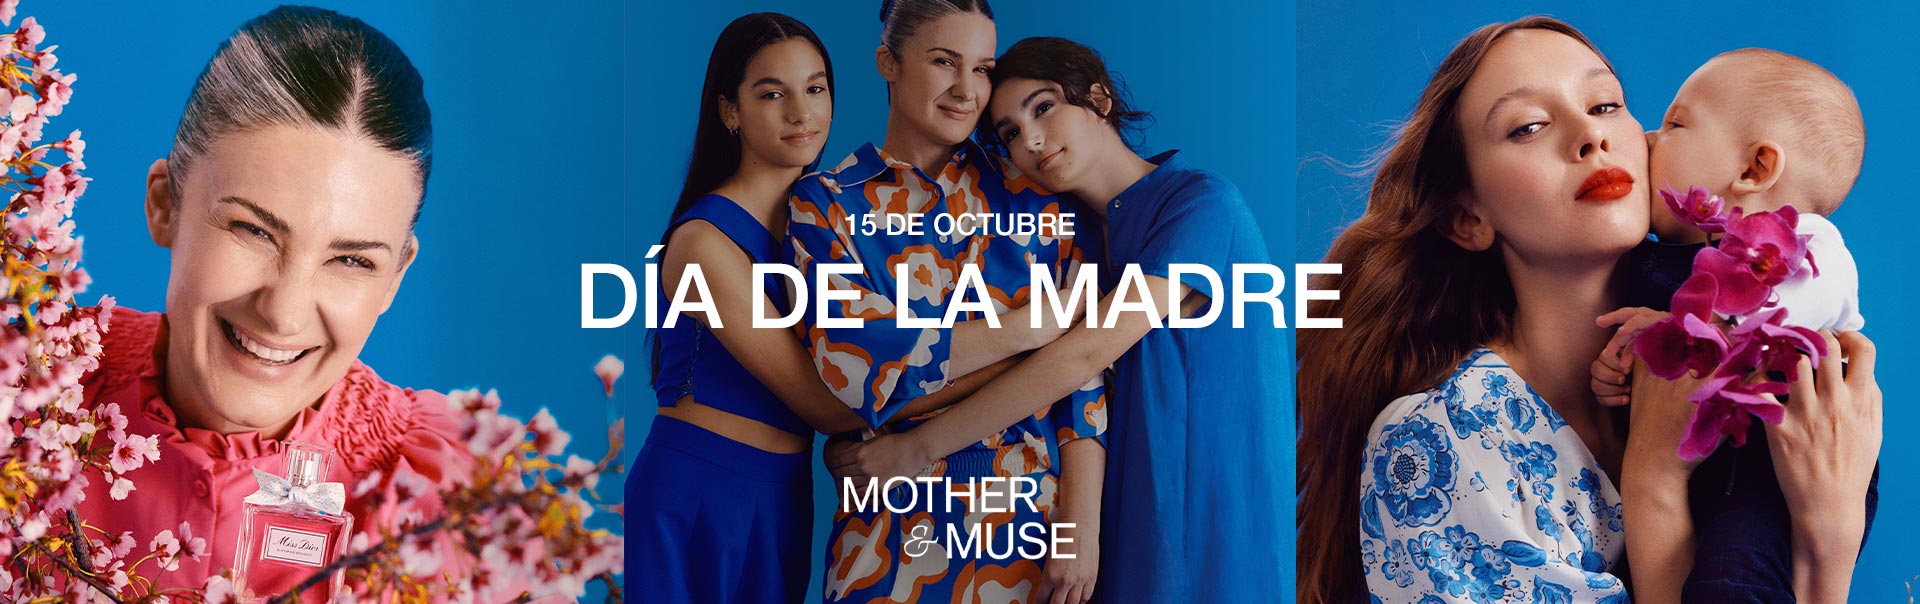 Mother & Muse - Día de la madre n Perfumerías Rouge